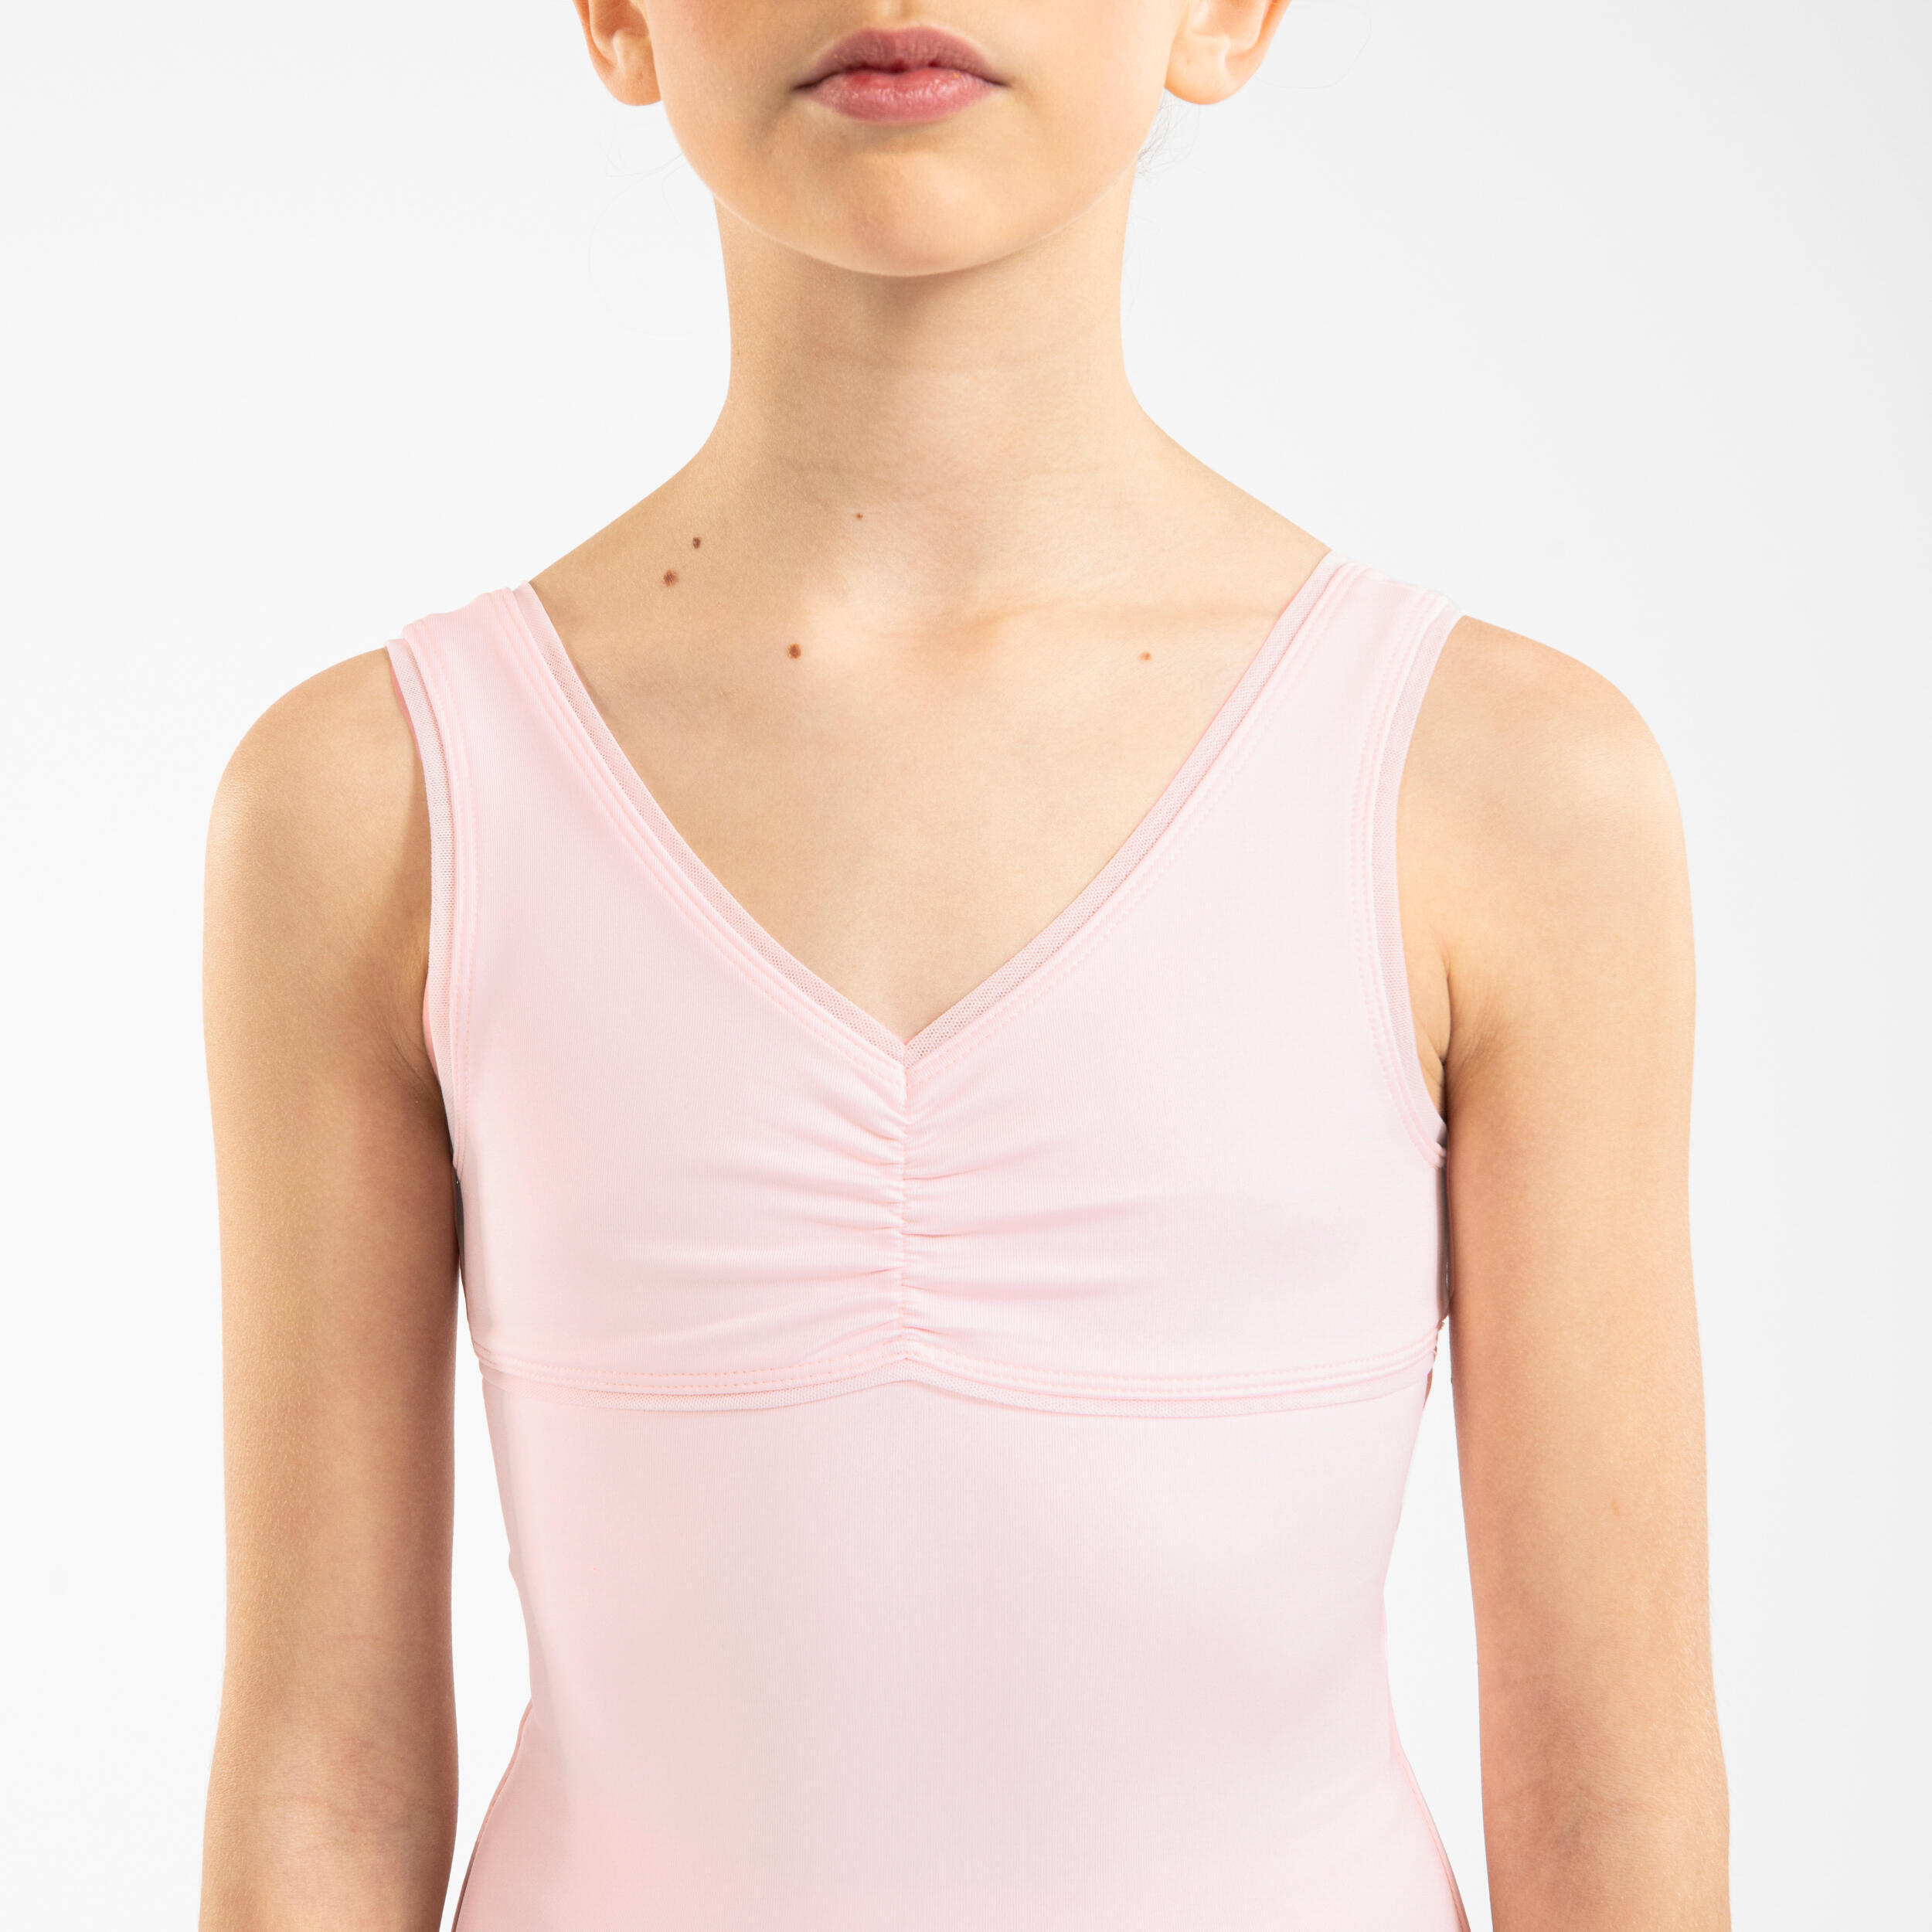 Refurbished Girls Ballet Leotard - Pink - A Grade 3/6